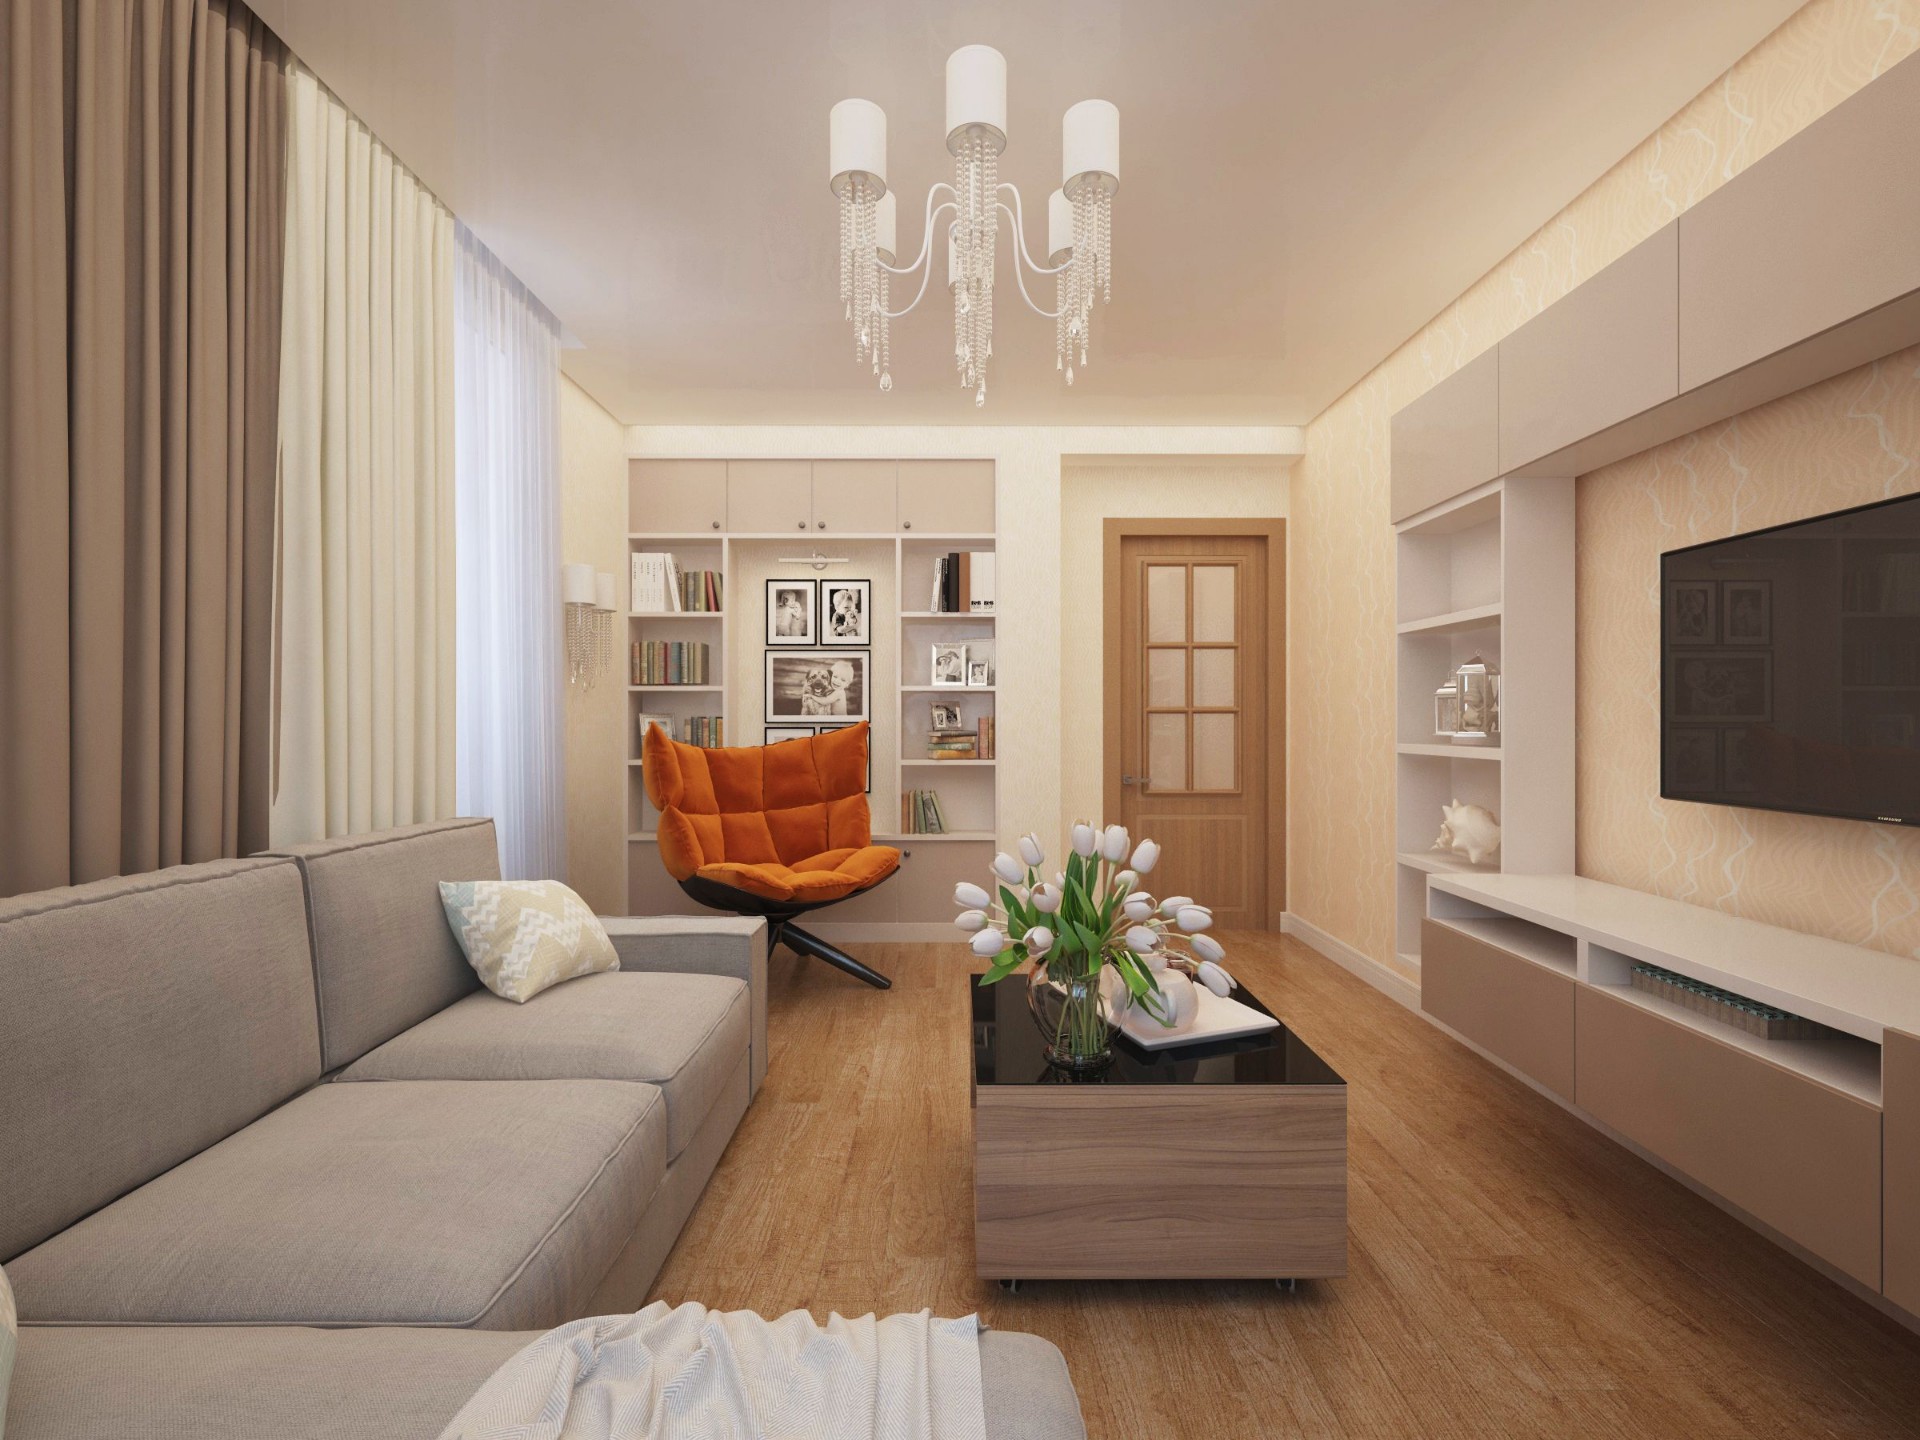 Квартиры 36-37 кв.м: дизайн однокомнатной, фото в современном стиле, косметический ремонт, как обставить интерьер, отделка, планировка